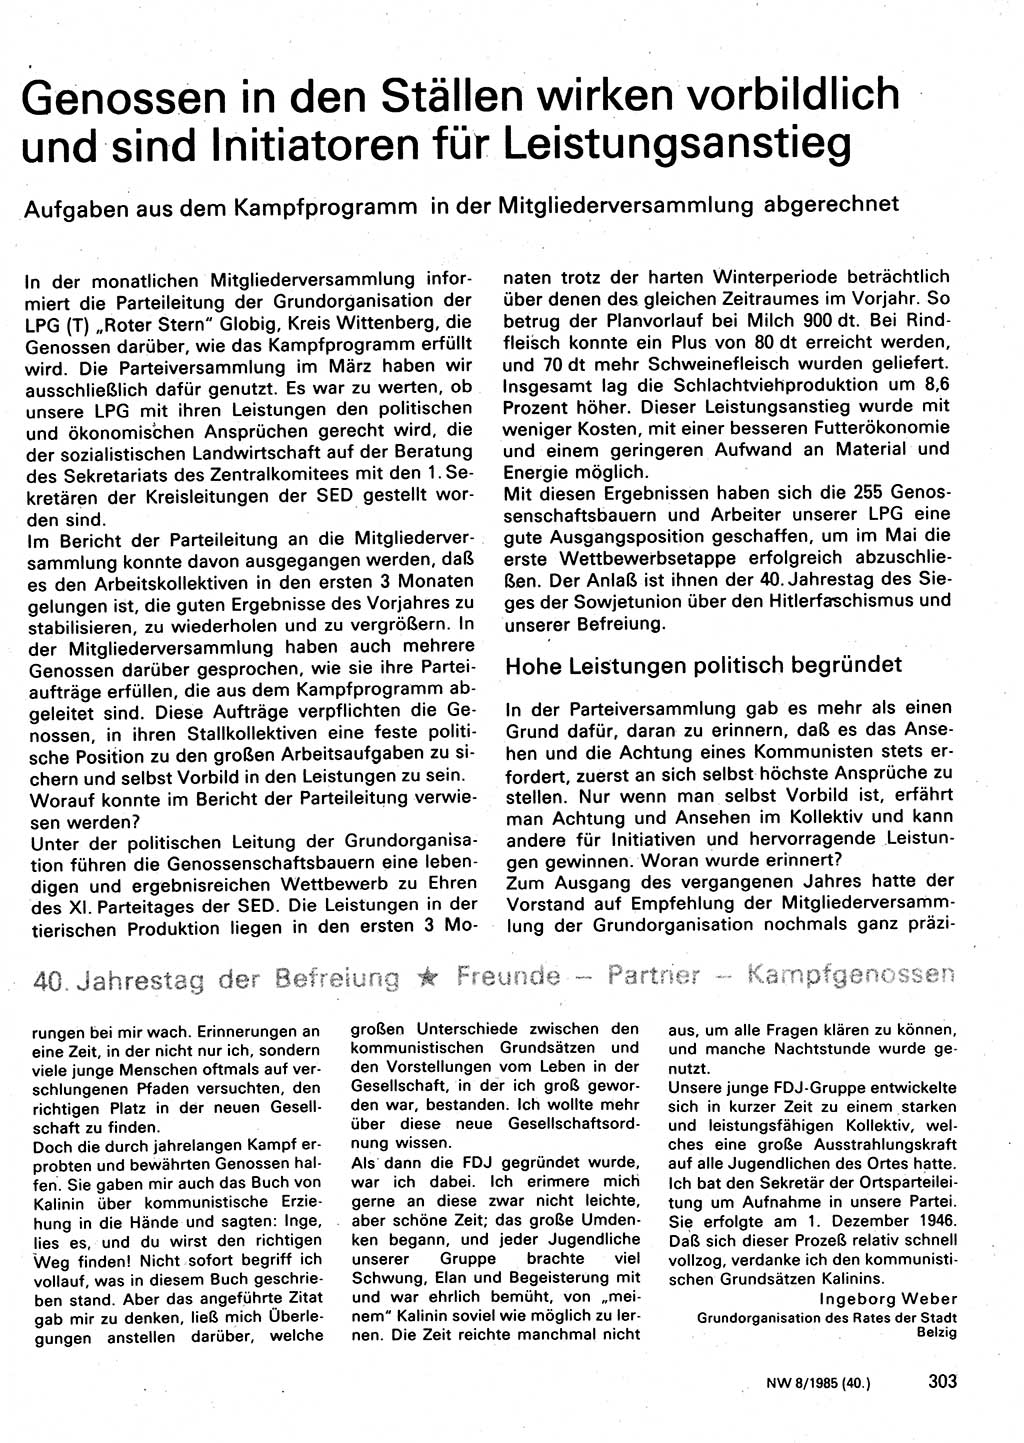 Neuer Weg (NW), Organ des Zentralkomitees (ZK) der SED (Sozialistische Einheitspartei Deutschlands) für Fragen des Parteilebens, 40. Jahrgang [Deutsche Demokratische Republik (DDR)] 1985, Seite 303 (NW ZK SED DDR 1985, S. 303)